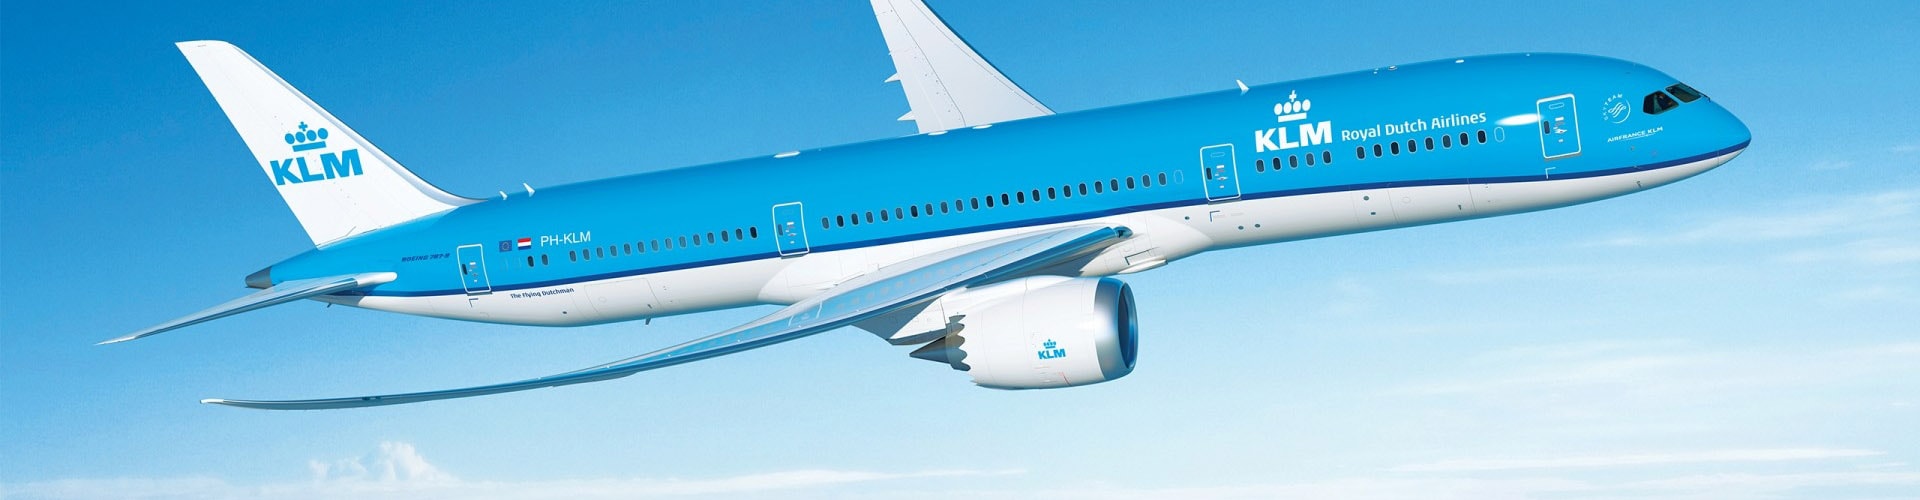 KLMオランダ航空画像1